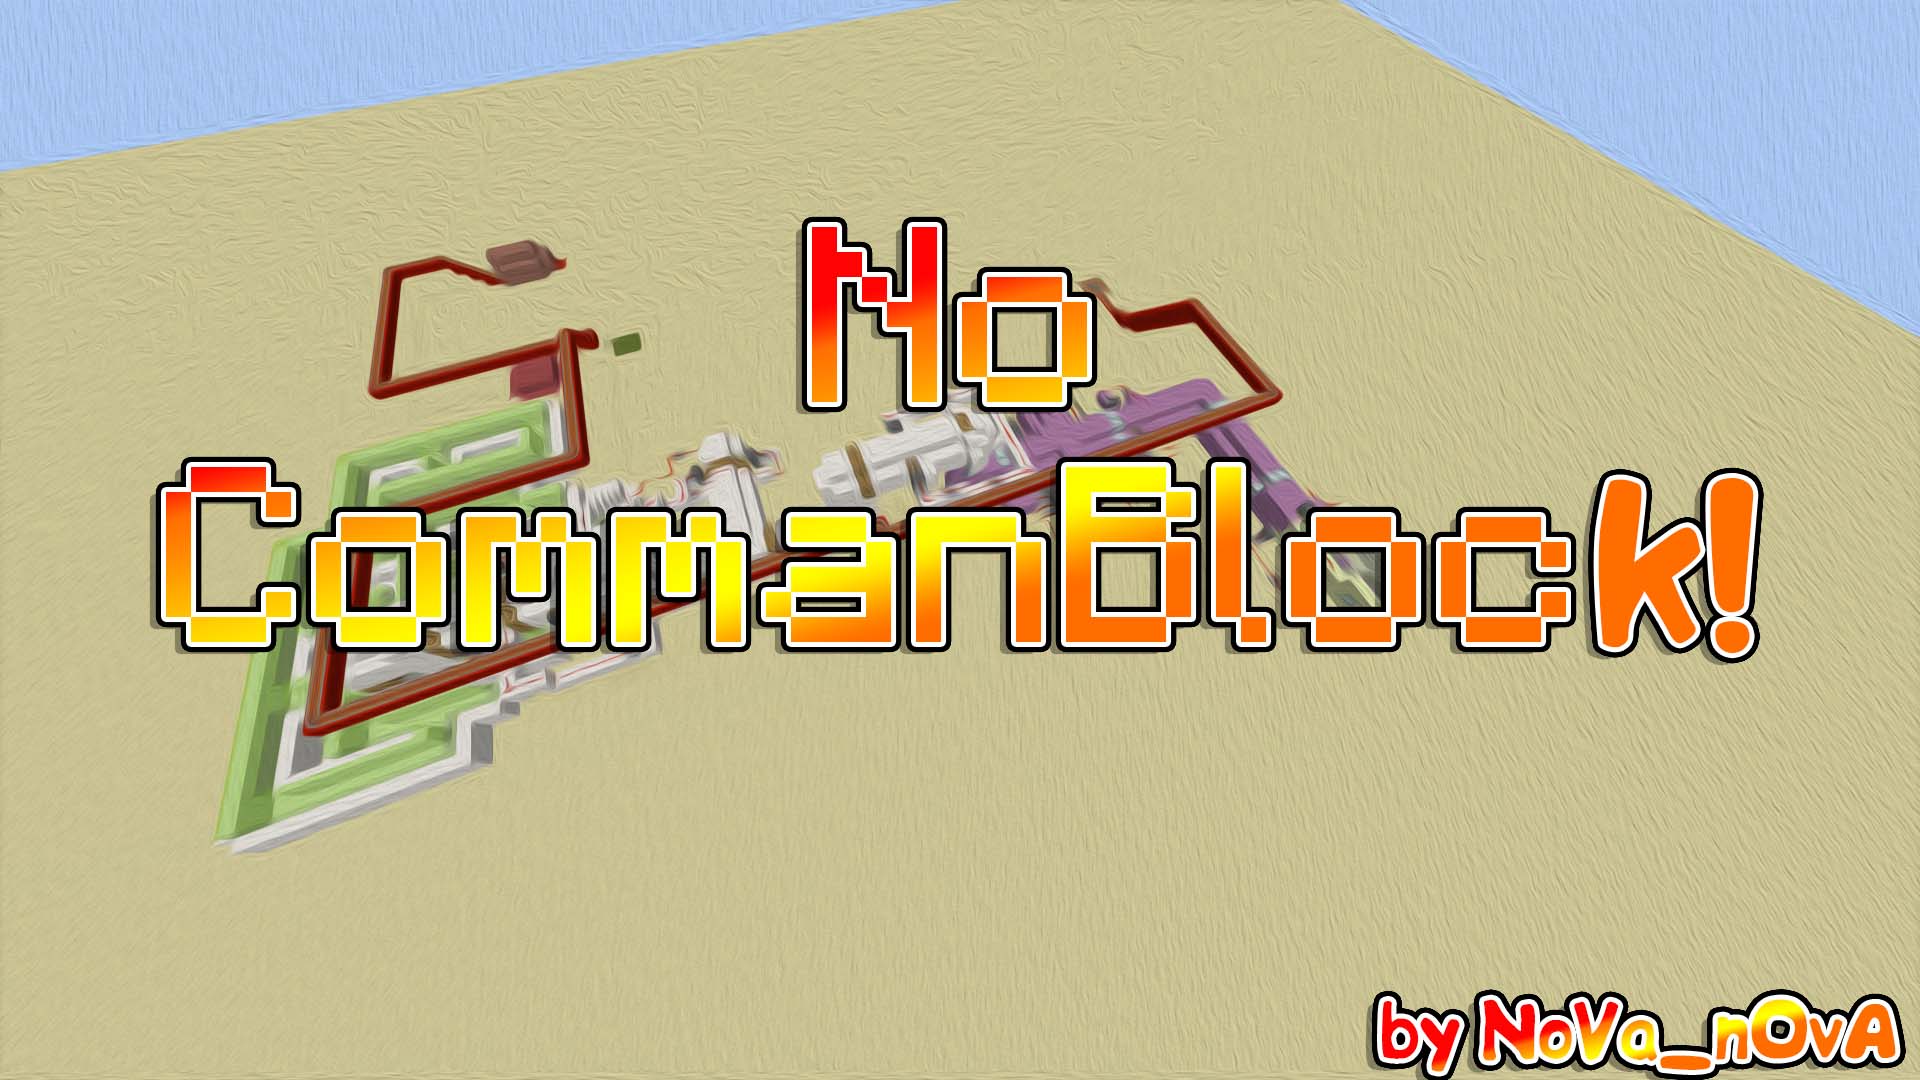 Descargar No CommandBlock! para Minecraft 1.11